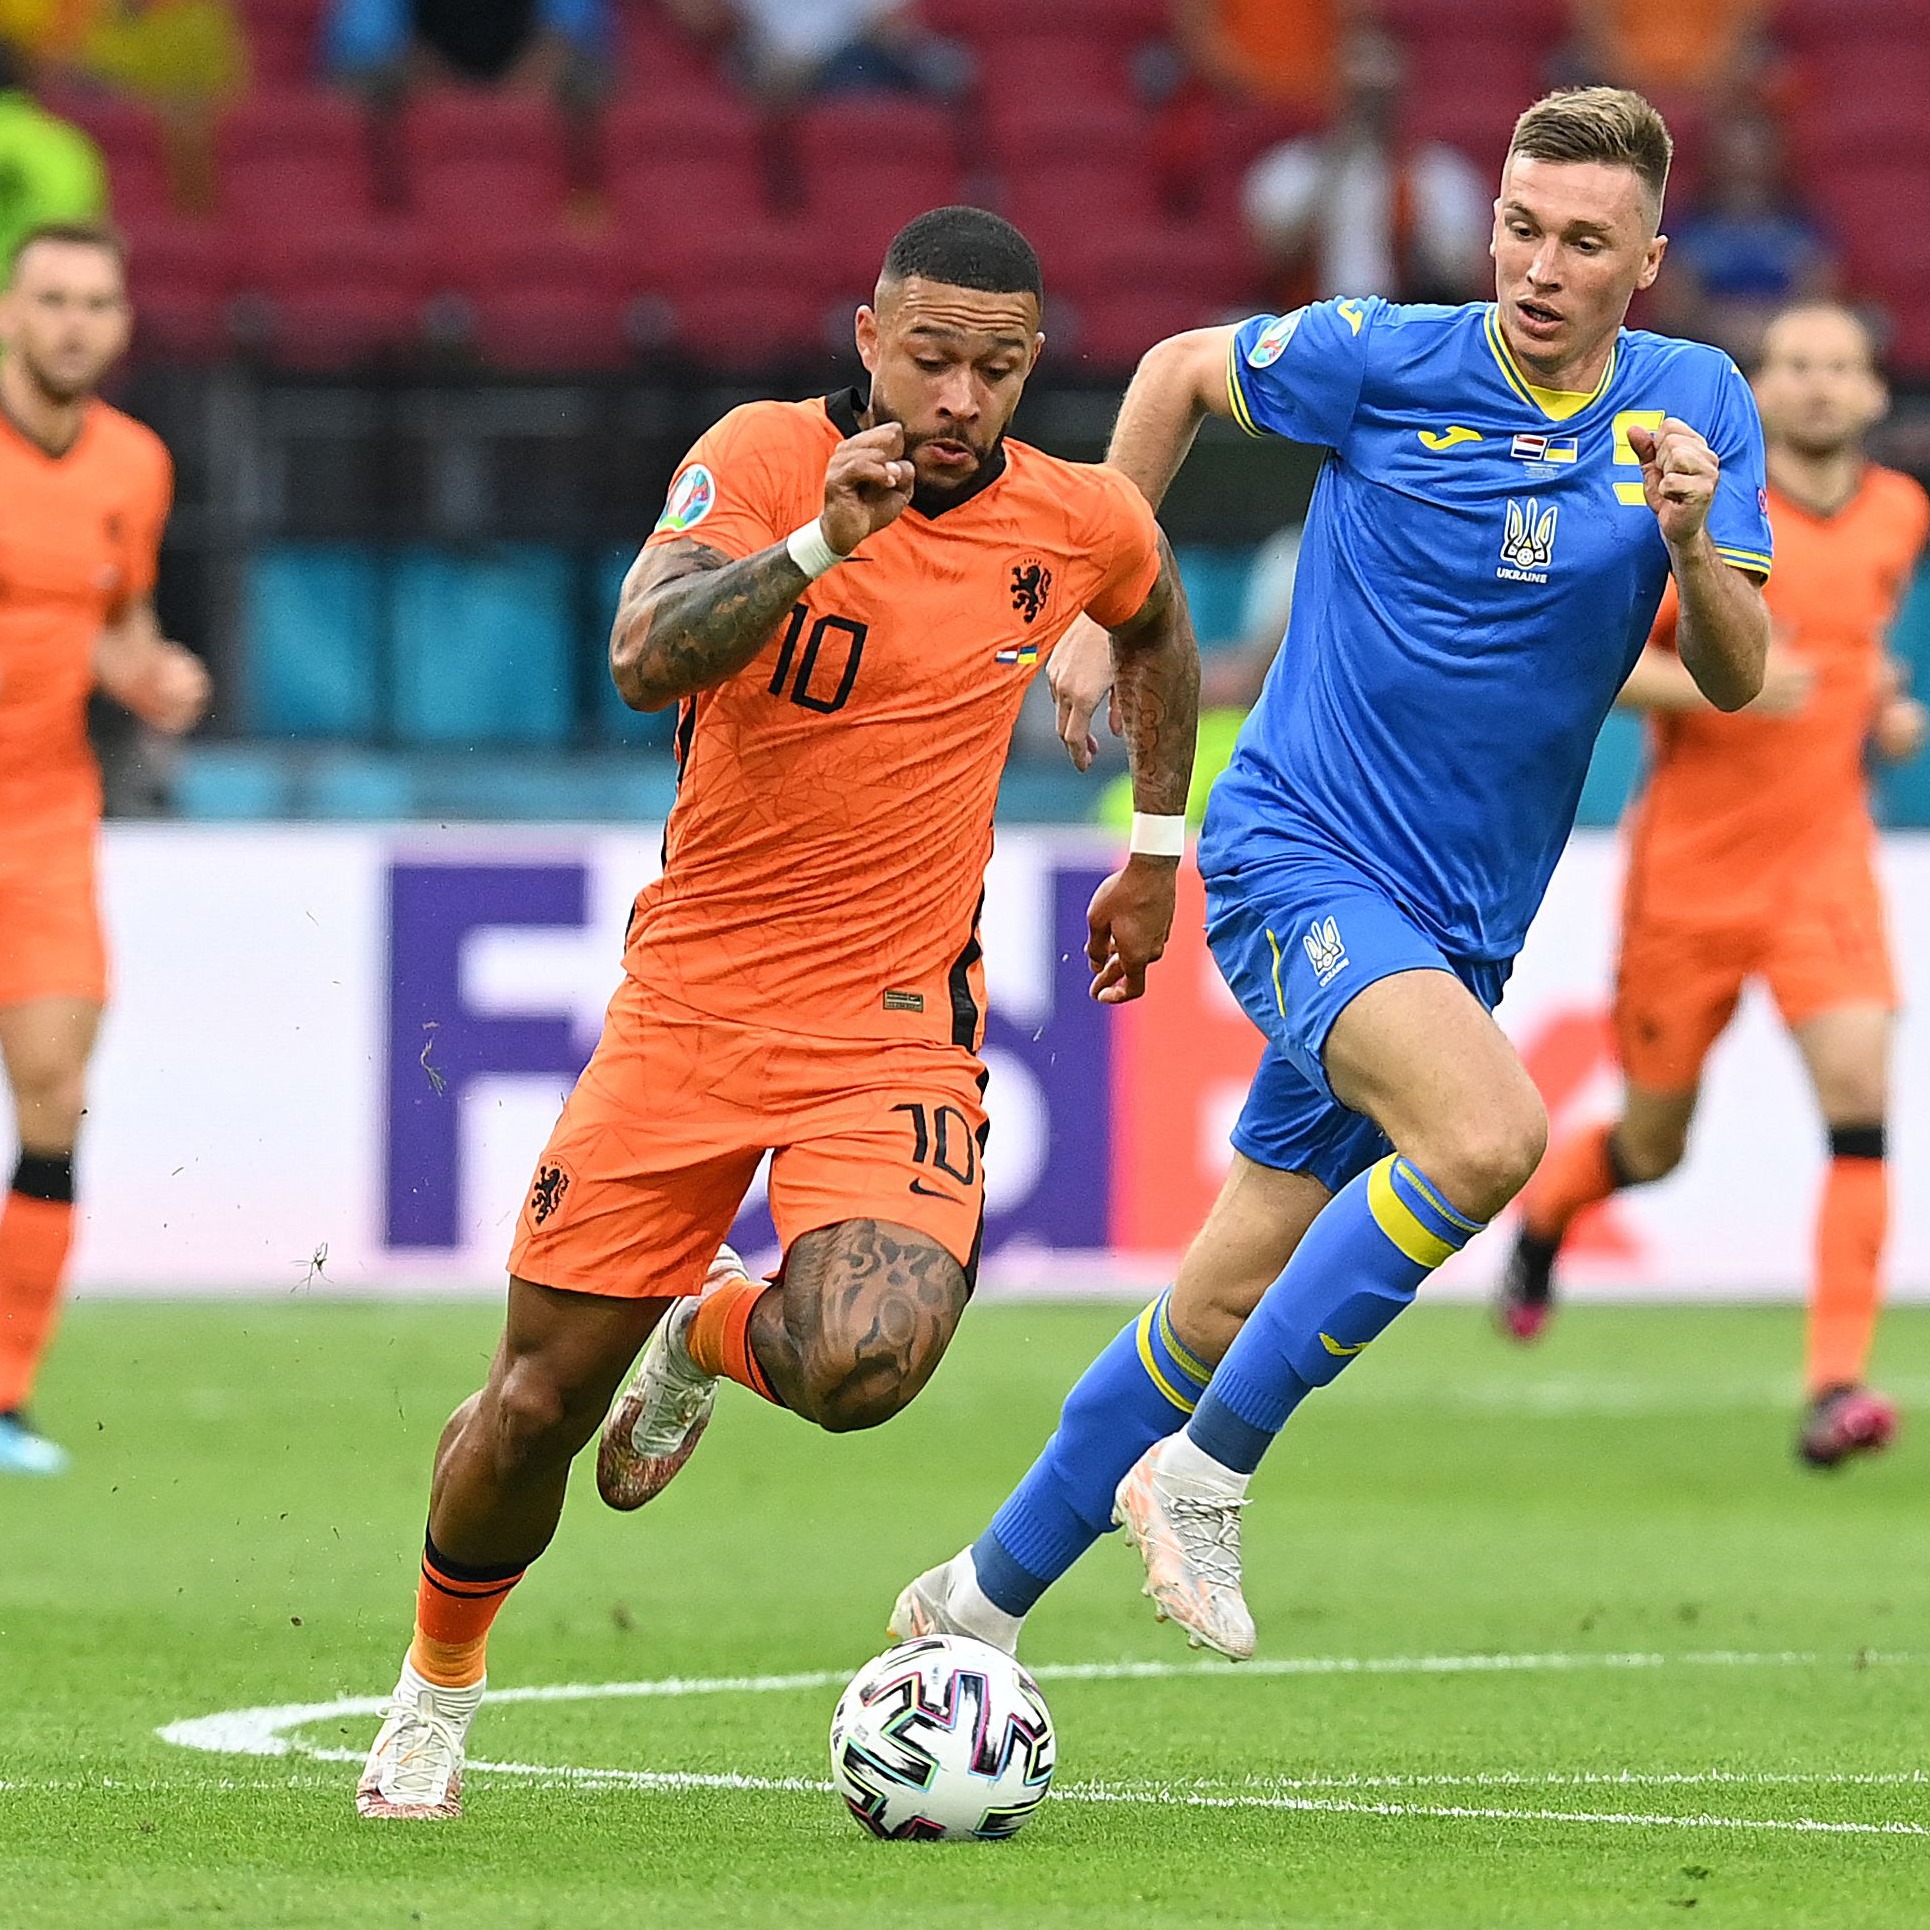 كأس أوروبا: ديپاي وفيجنالدوم يحلقان عاليا في صفوف المنتخب الهولندي